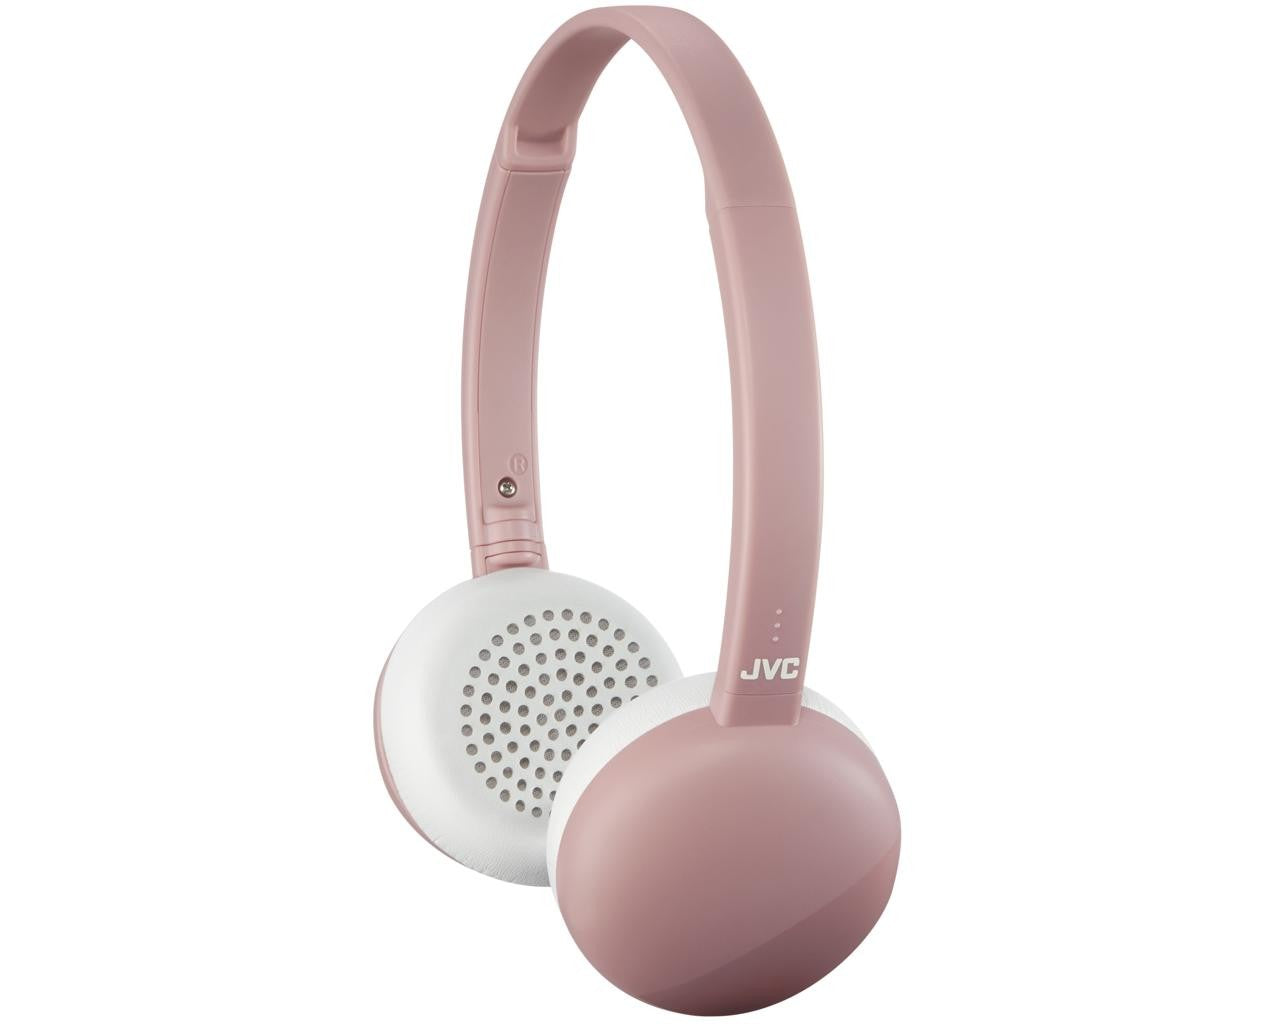 JVC Wireless On-ear Noise Cancelling Headphone